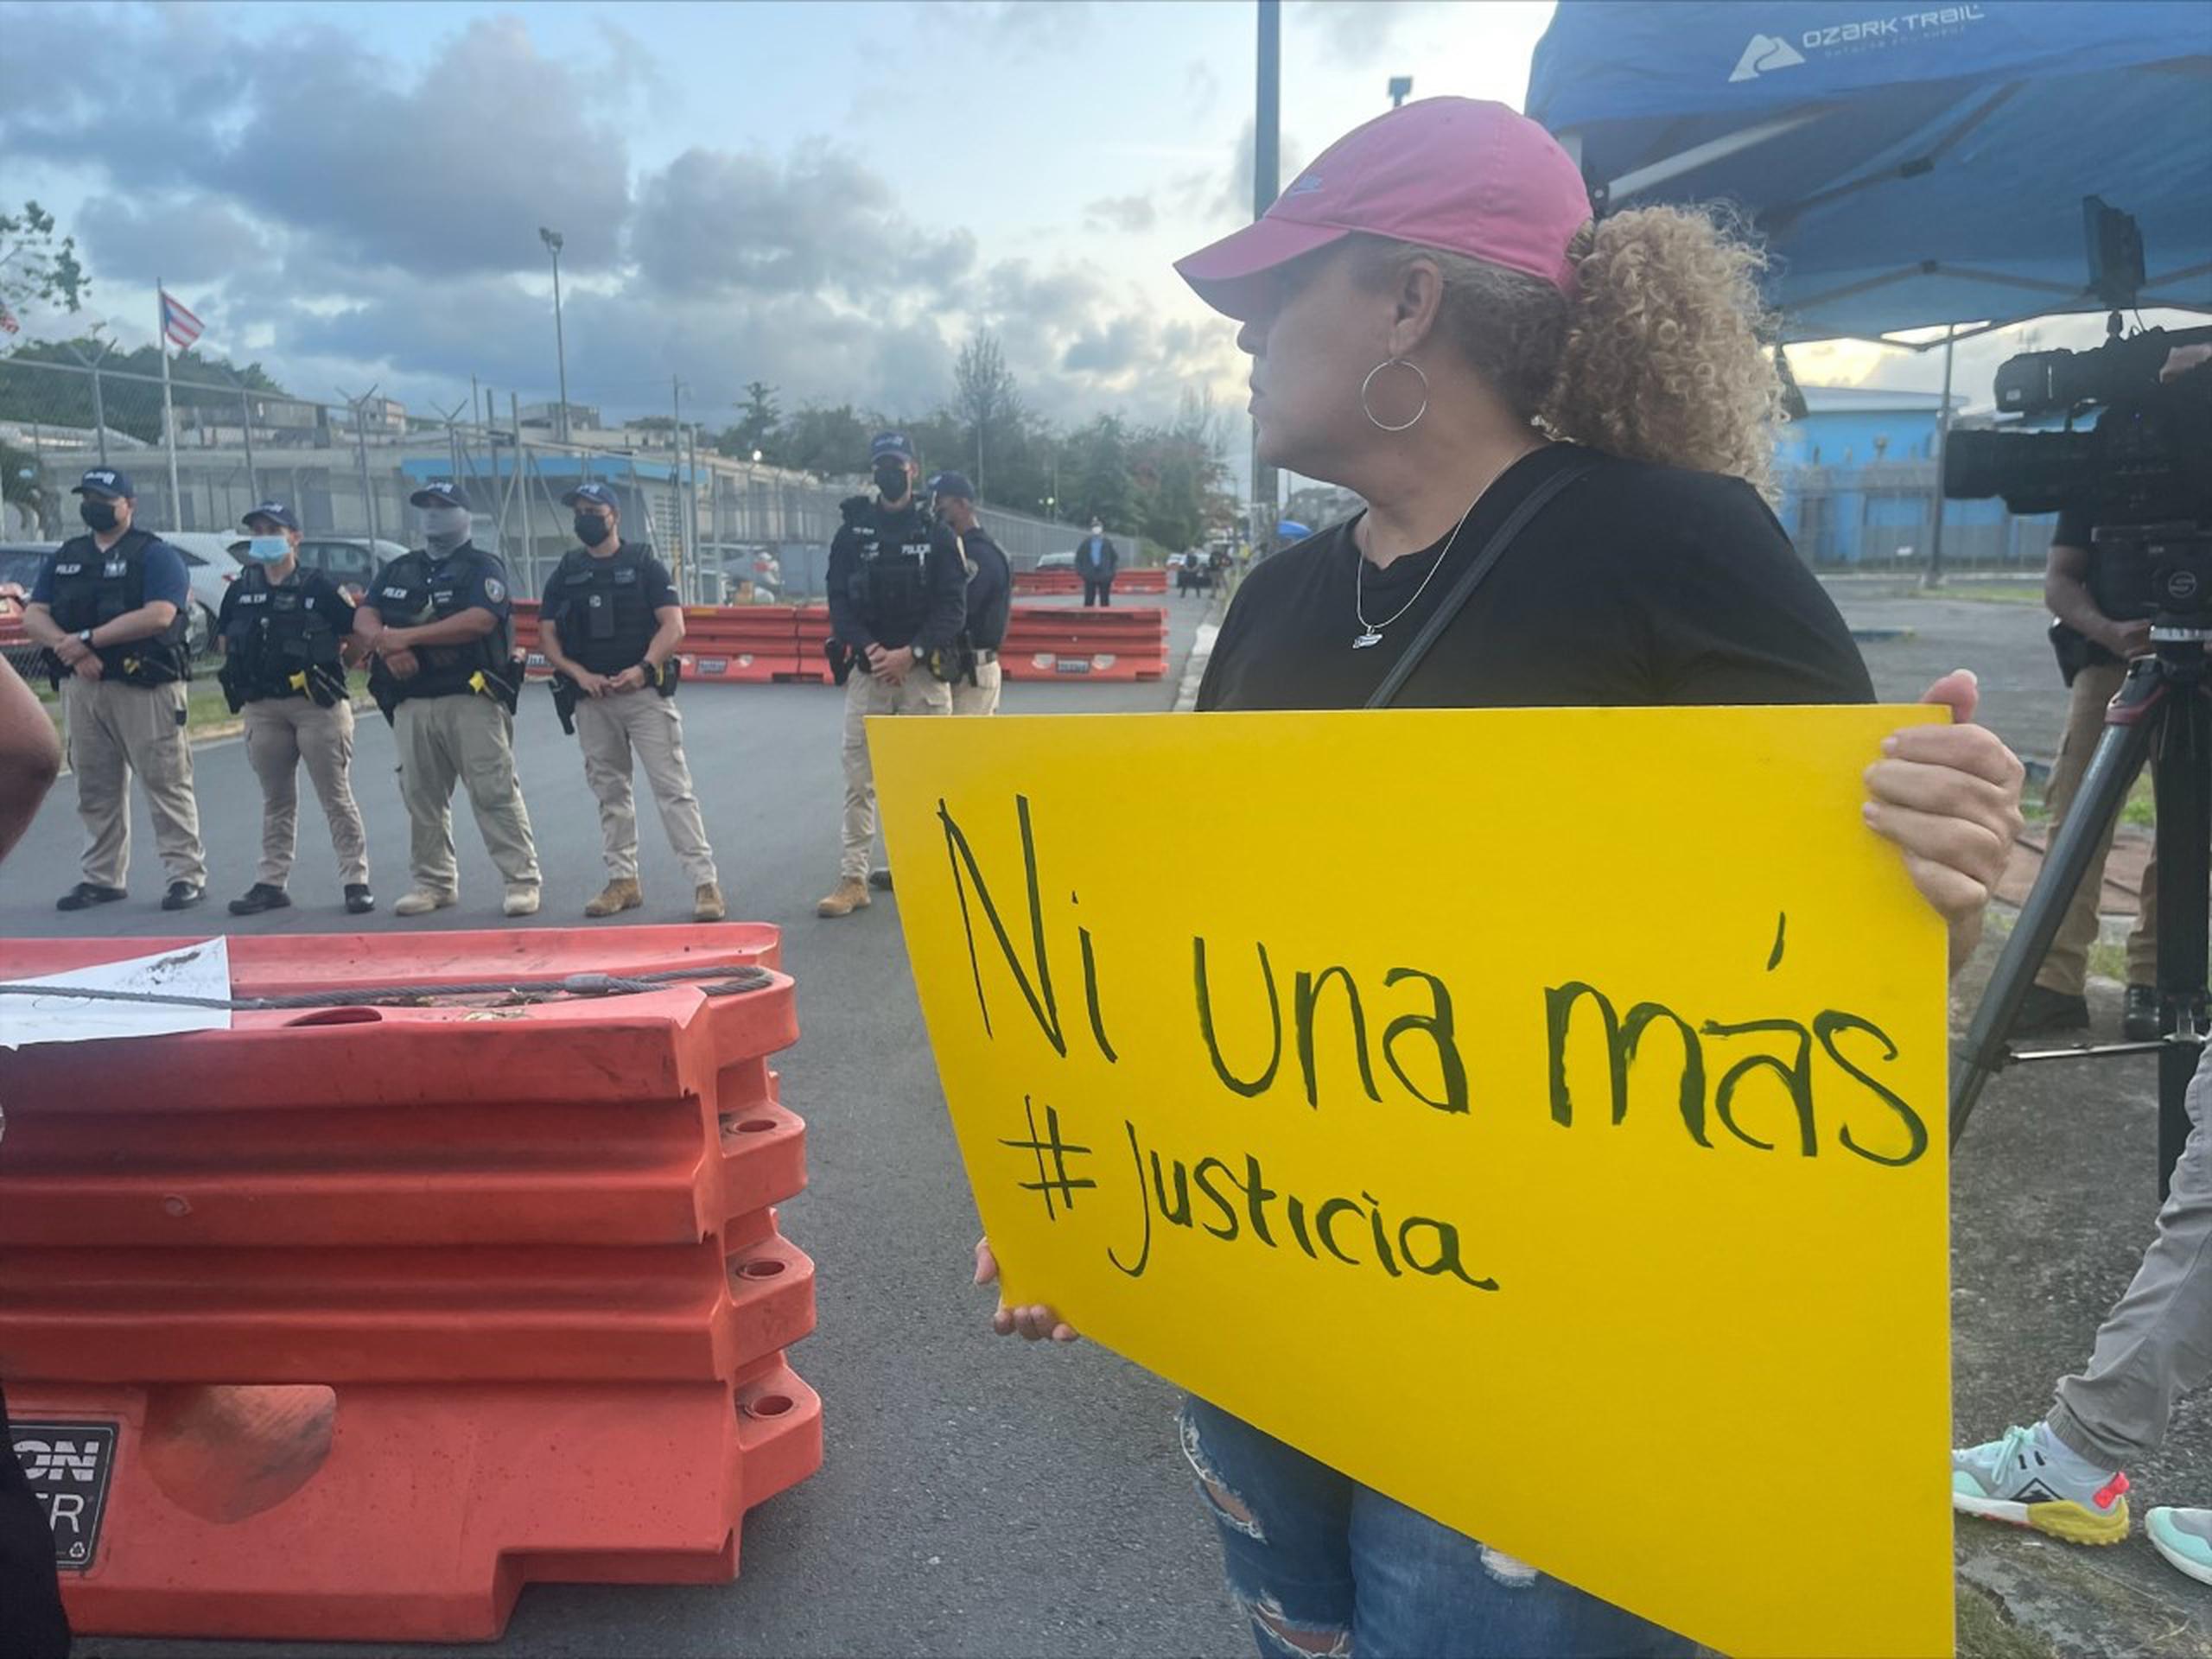 A diferencia de días anteriores, este jueves se ubicaron barricadas en el lugar donde llegaron decenas de manifestantes, incluyendo a personas del Colectivo Feminista. 

Foto Adriana Diaz tirado